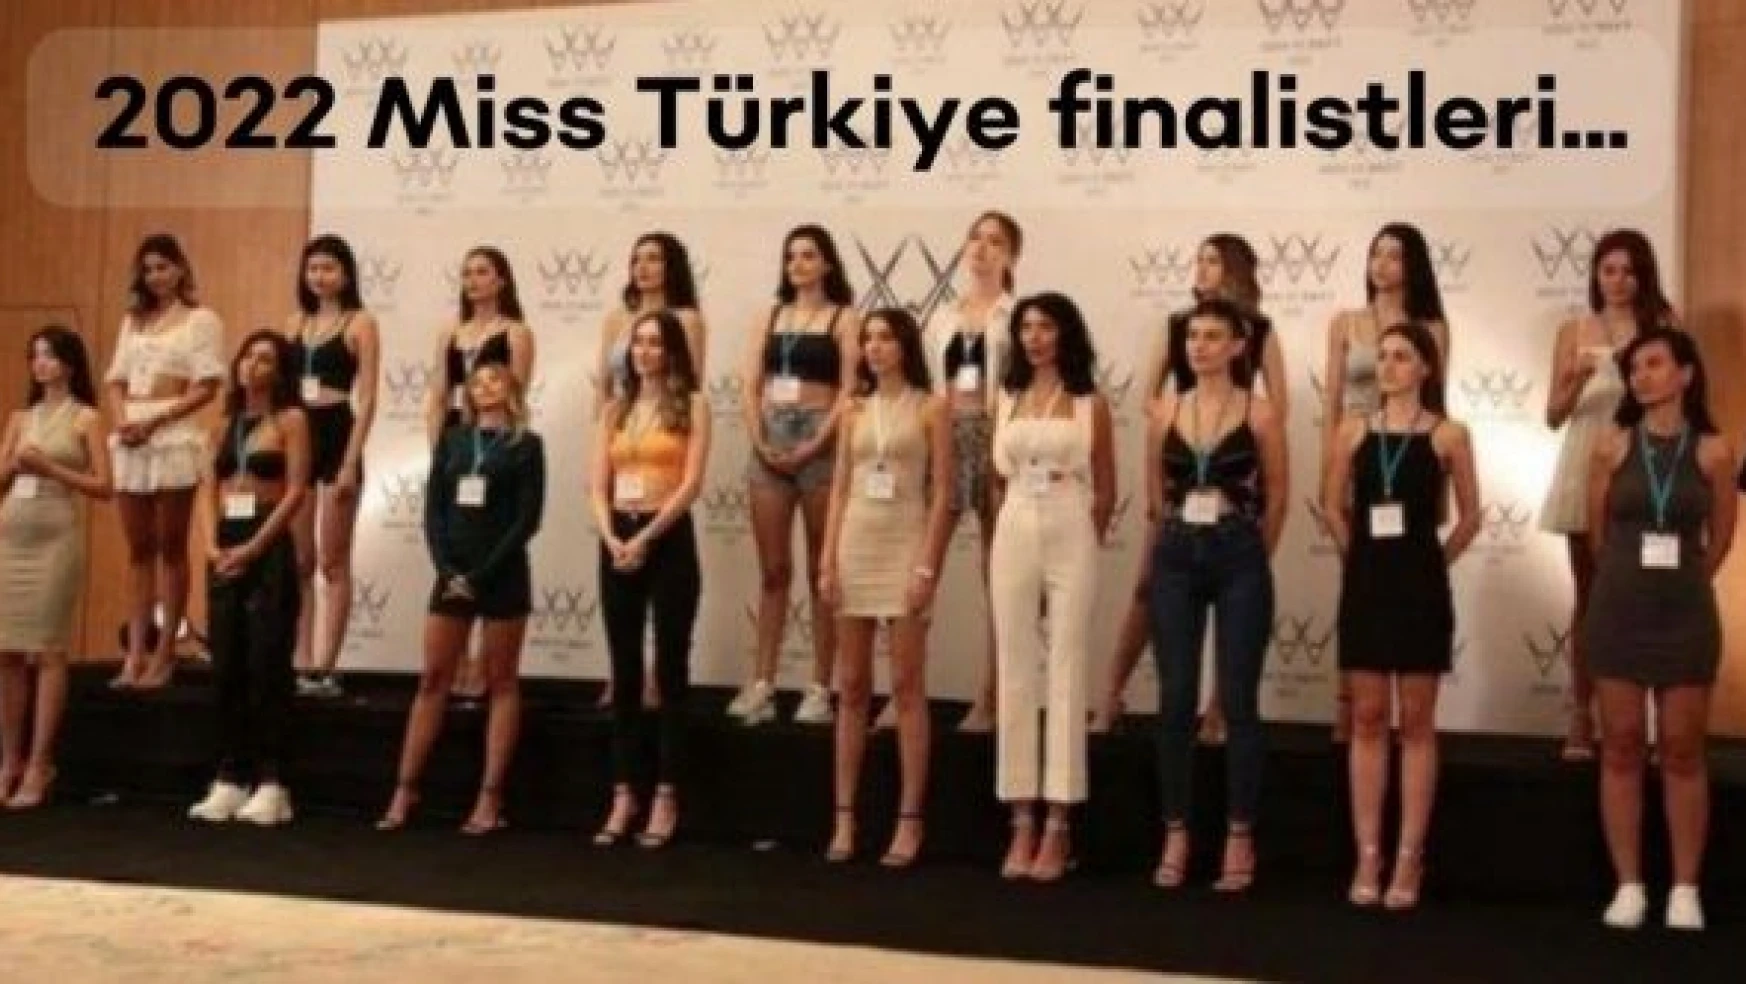 İşte 2022 Miss Türkiye finalistleri...